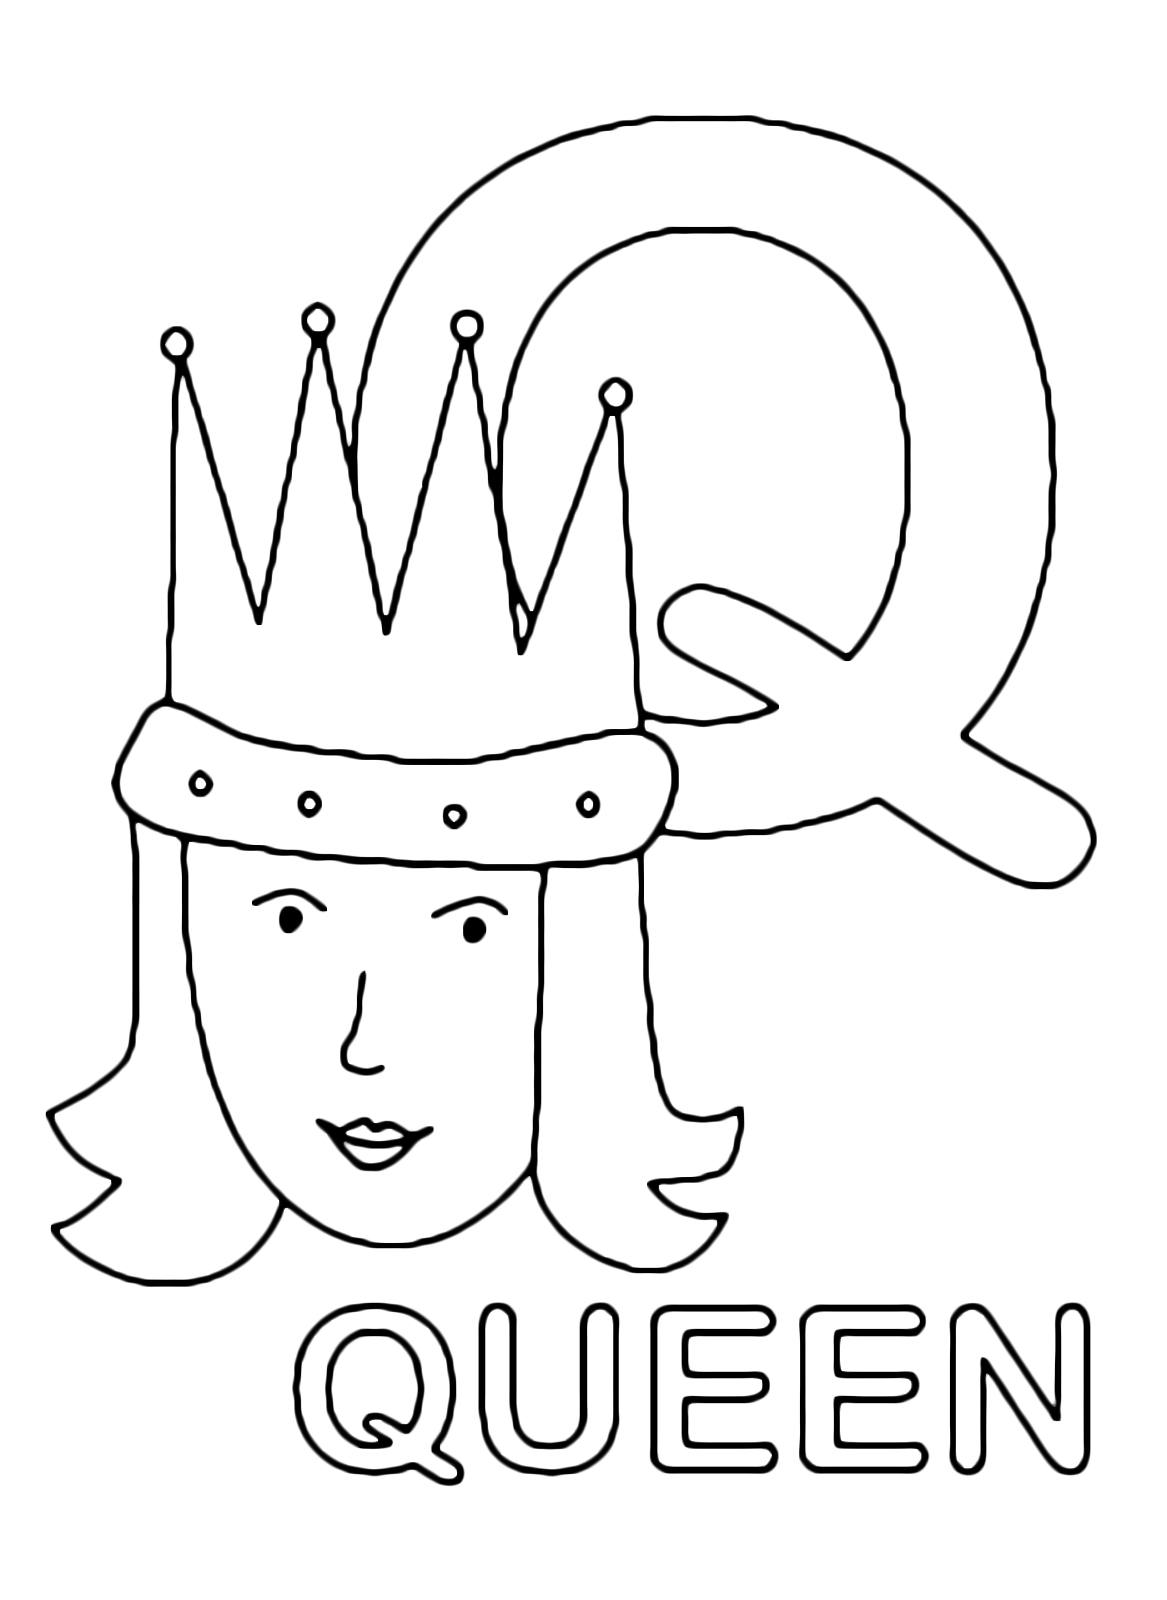 Lettere e numeri - Lettera Q in stampatello di queen (regina) in Inglese